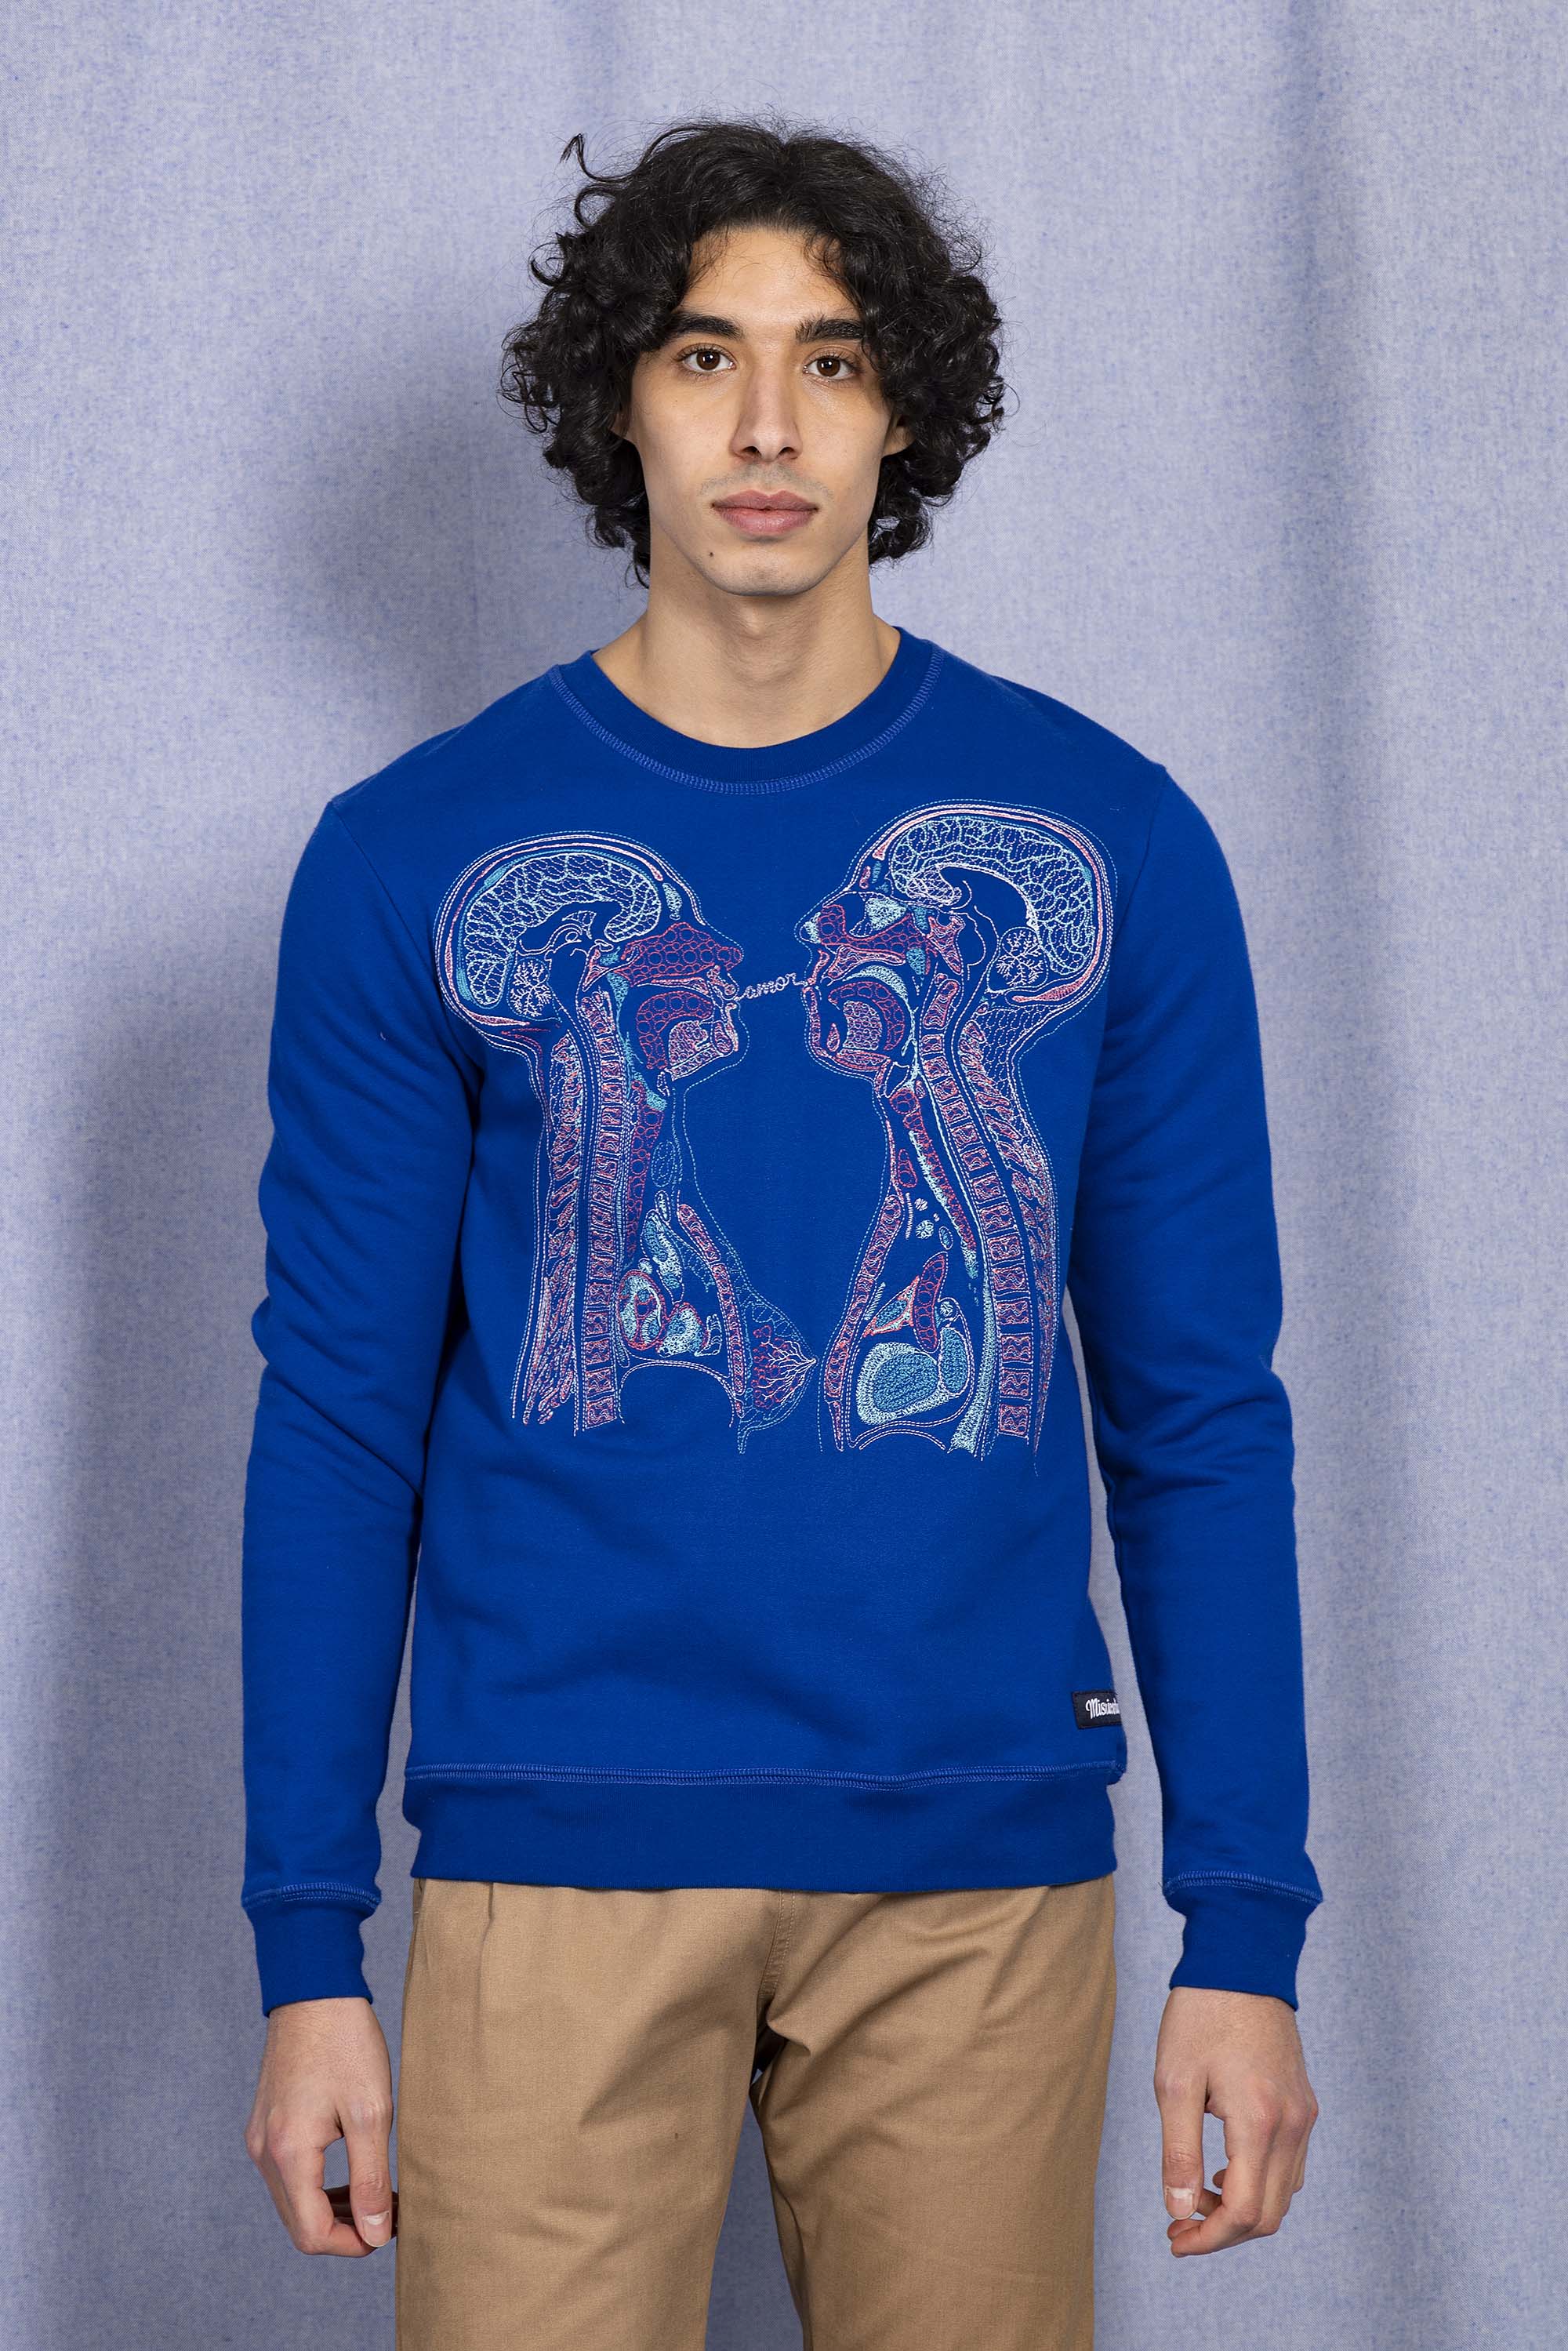 Sweatshirt Macarron Radiografia Bleu Saphir sweatshirts pour homme pour procurer une sensation de chaleur au quotidien